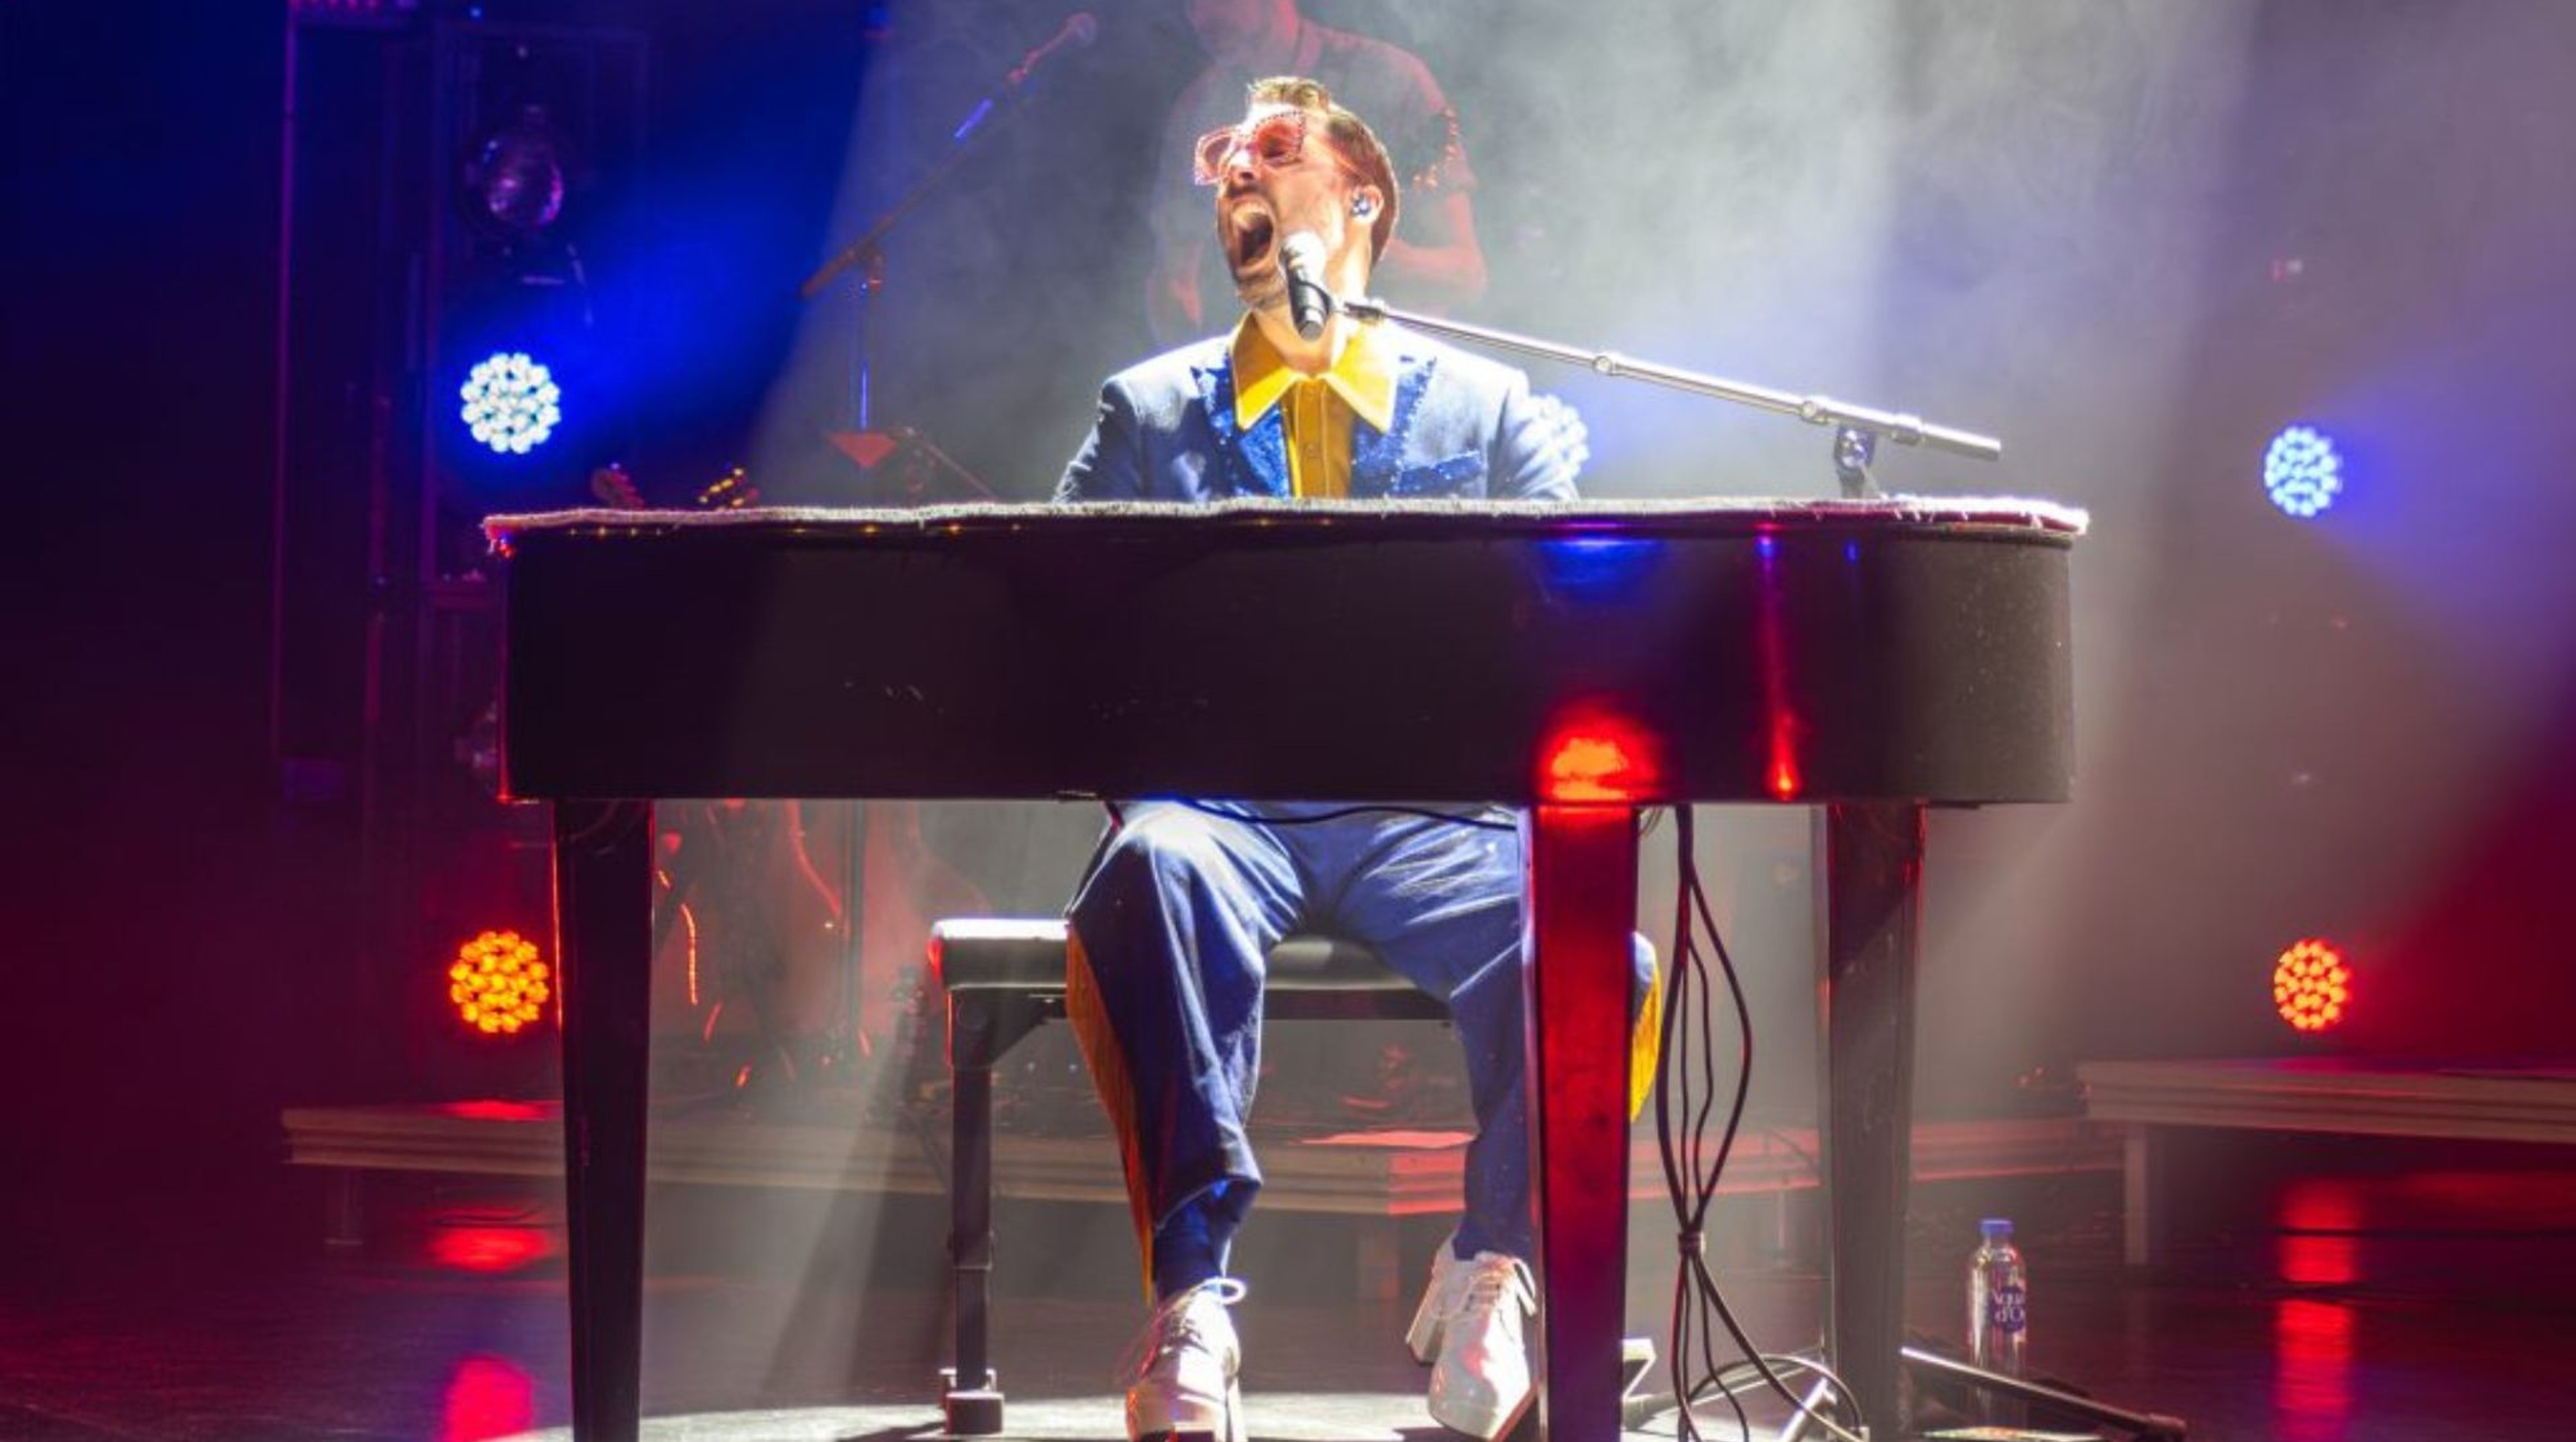  Jonas Gideon som Elton John sitter bakom flygeln och spelar och sjunger.